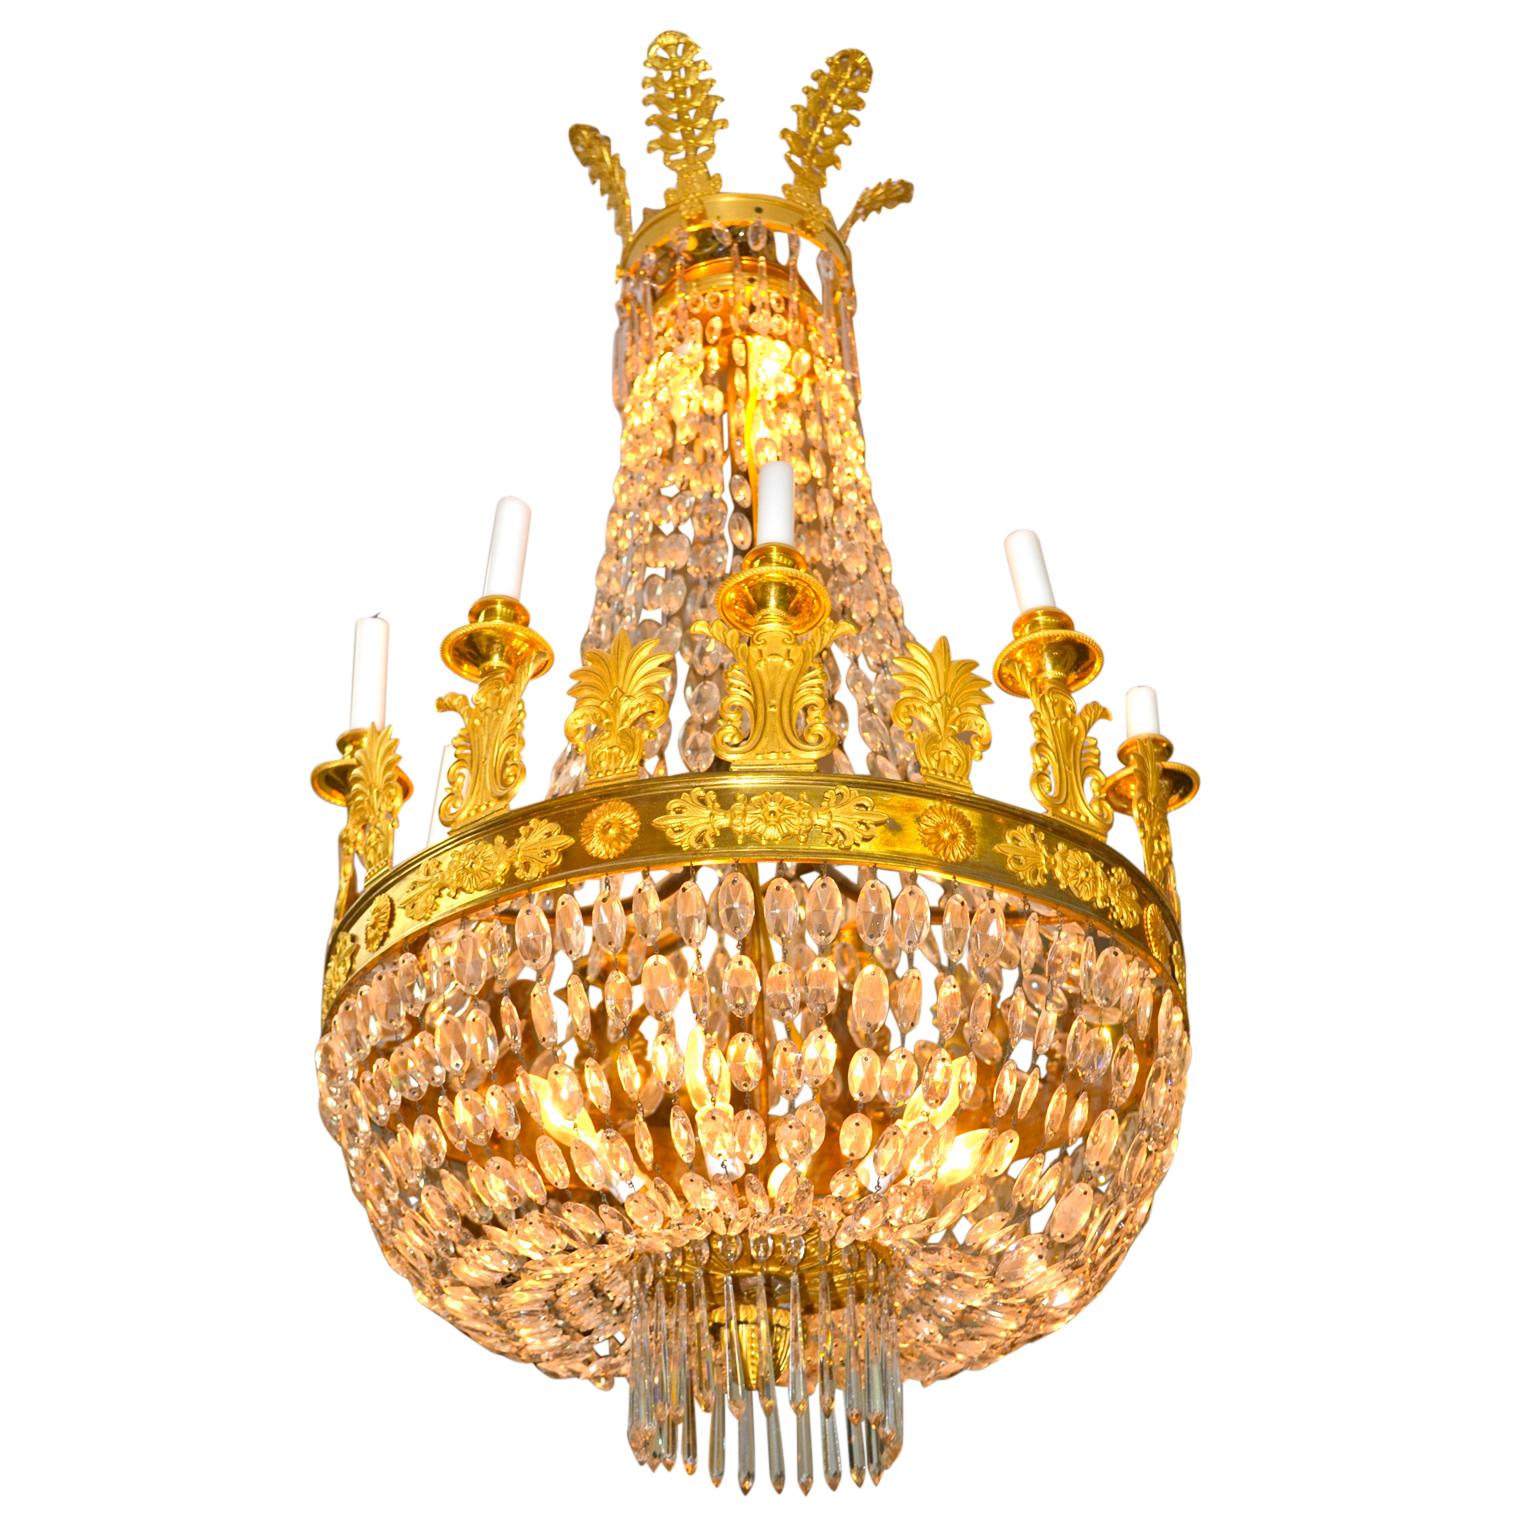 Lustre d'époque Empire français en cristal et bronze doré avec neuf bougies. Le lustre comporte une partie supérieure décorée de guirlandes de cristal et de grandes palmettes dorées, le corps étant suspendu par des rangées de cristaux gradués en